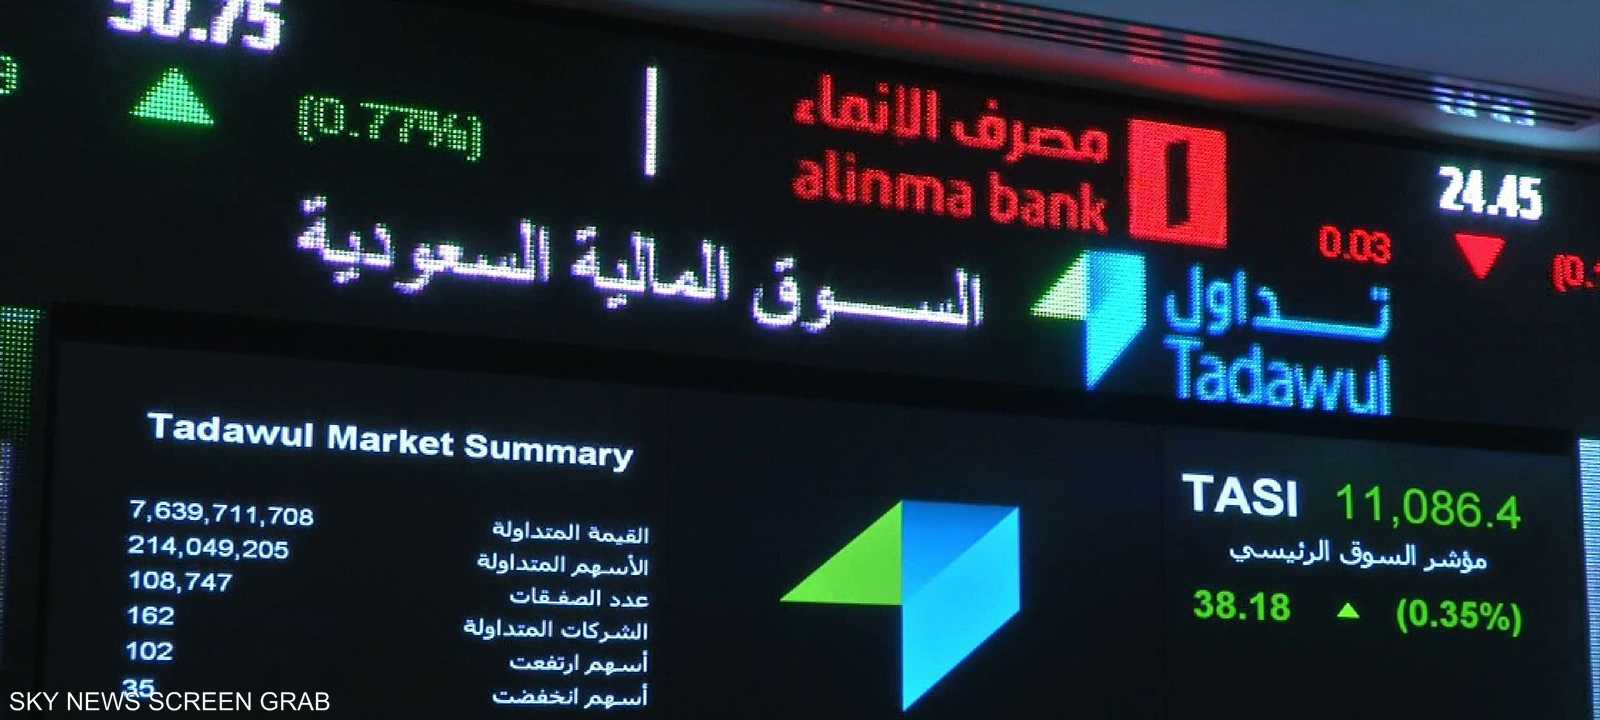 البورصة السعودية أغلقت منخفضة بعد قرار أوبك الإبقاء على سقف الإنتاج (أرشيف)